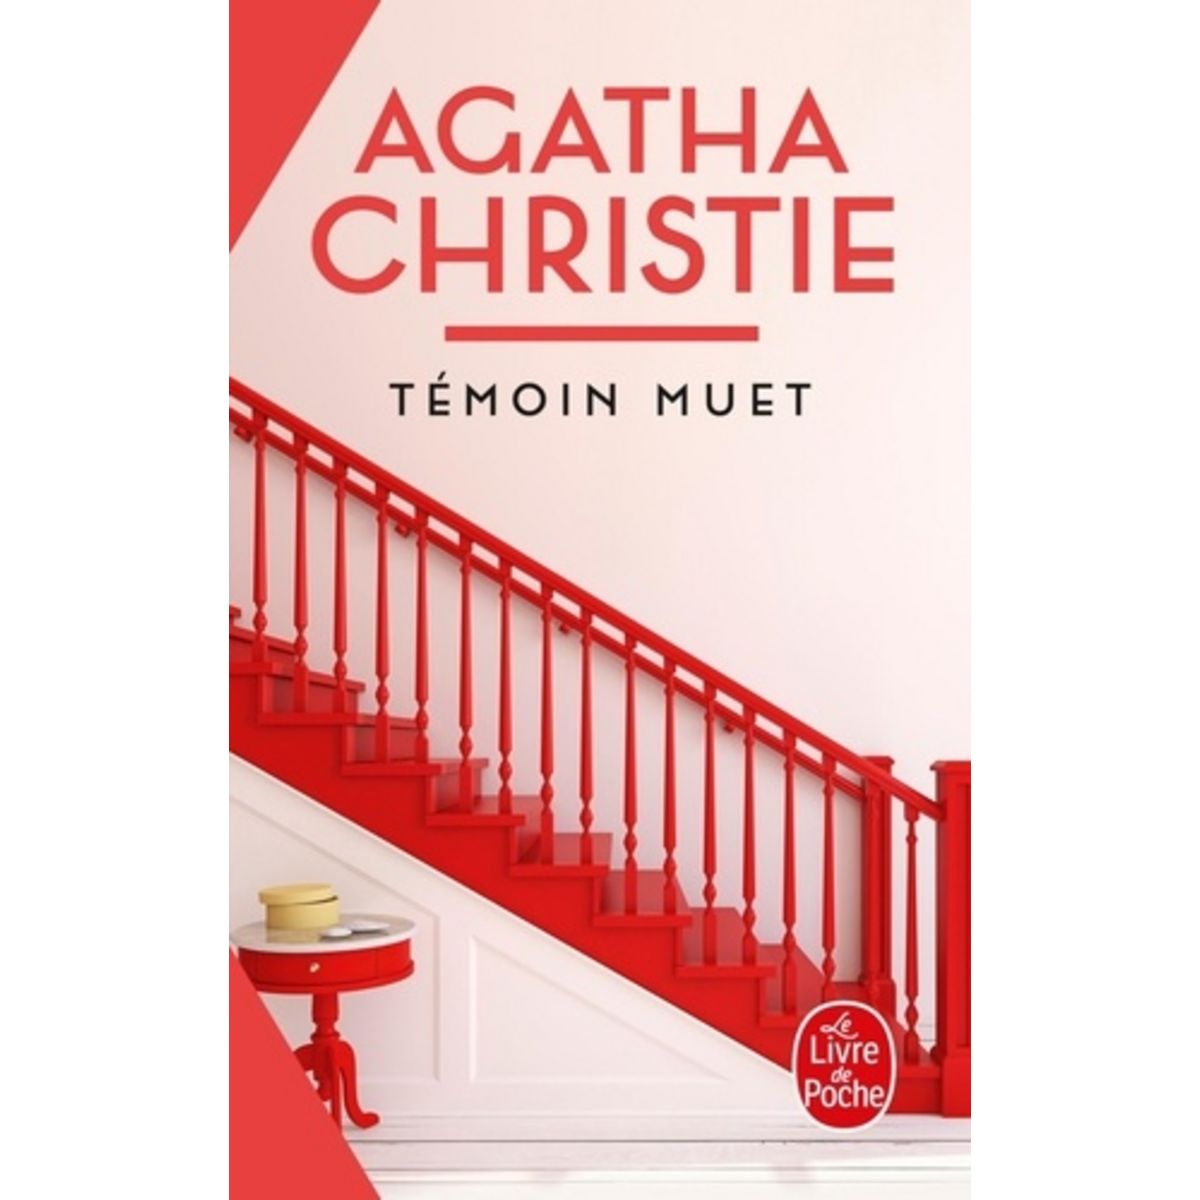  TEMOIN MUET, Christie Agatha